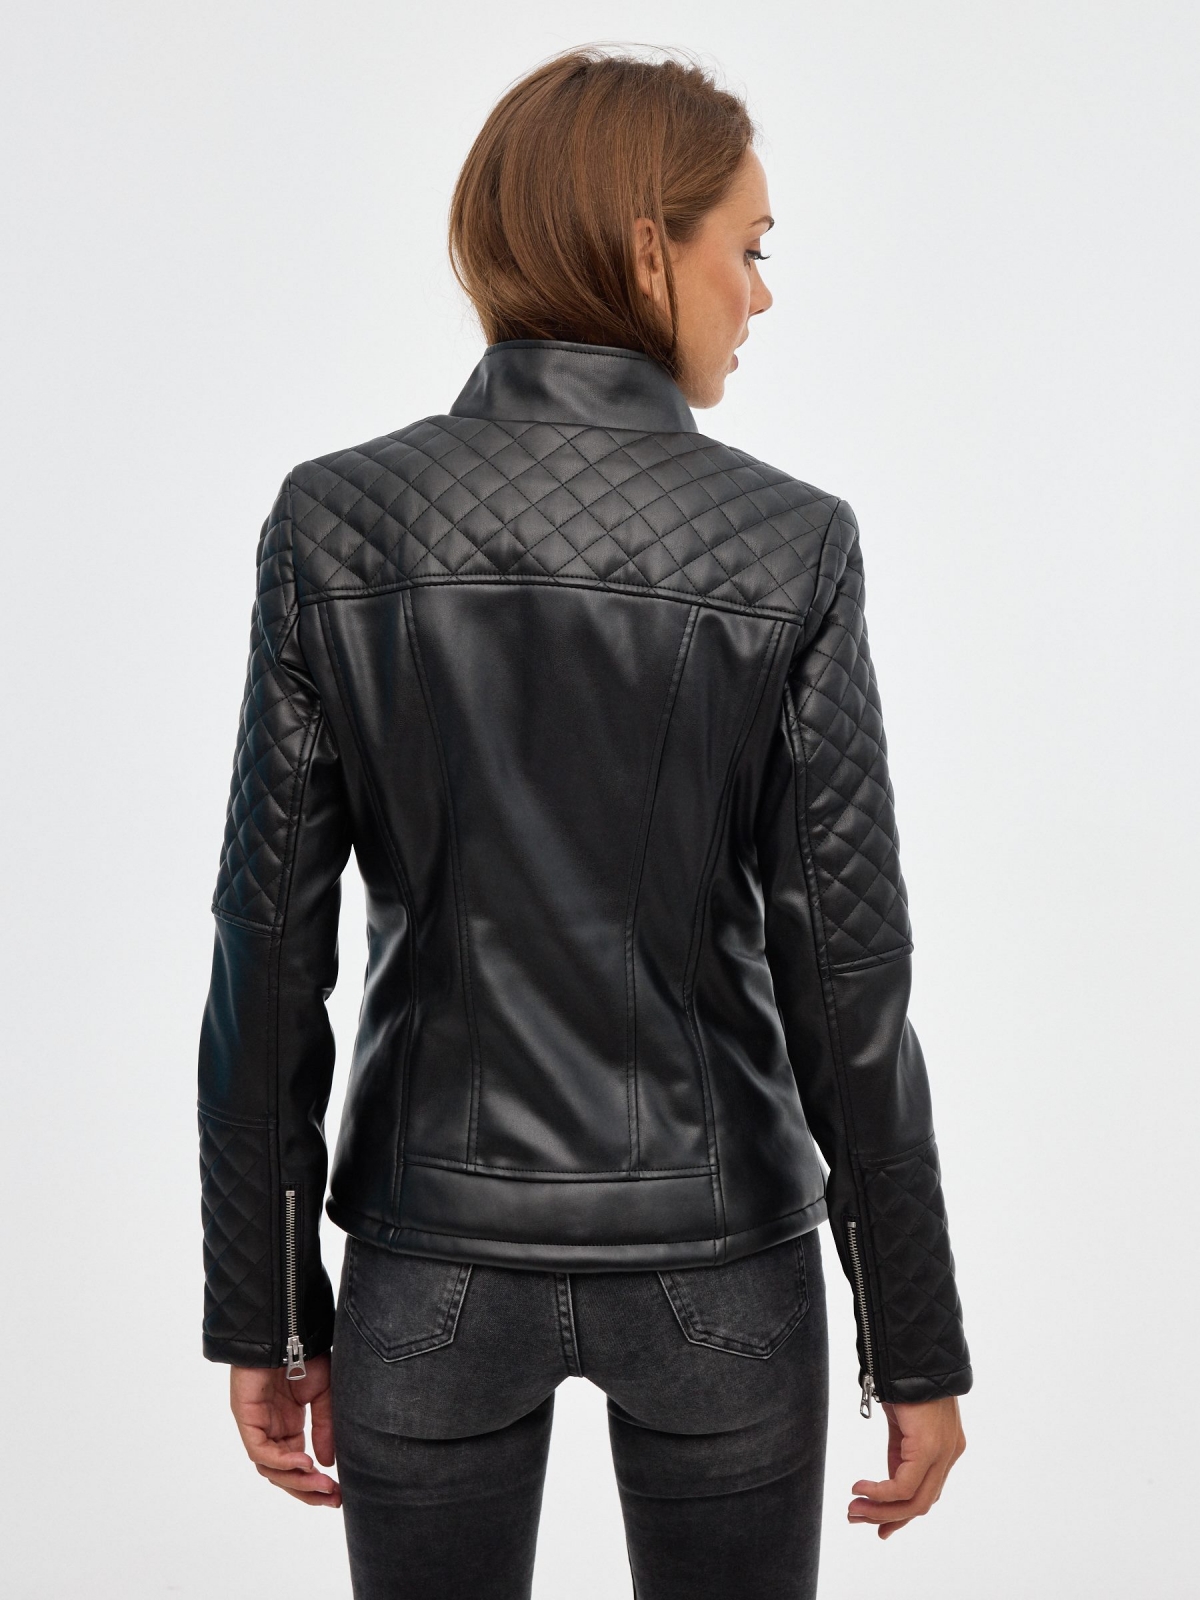 Leather effect biker jacket black middle back view